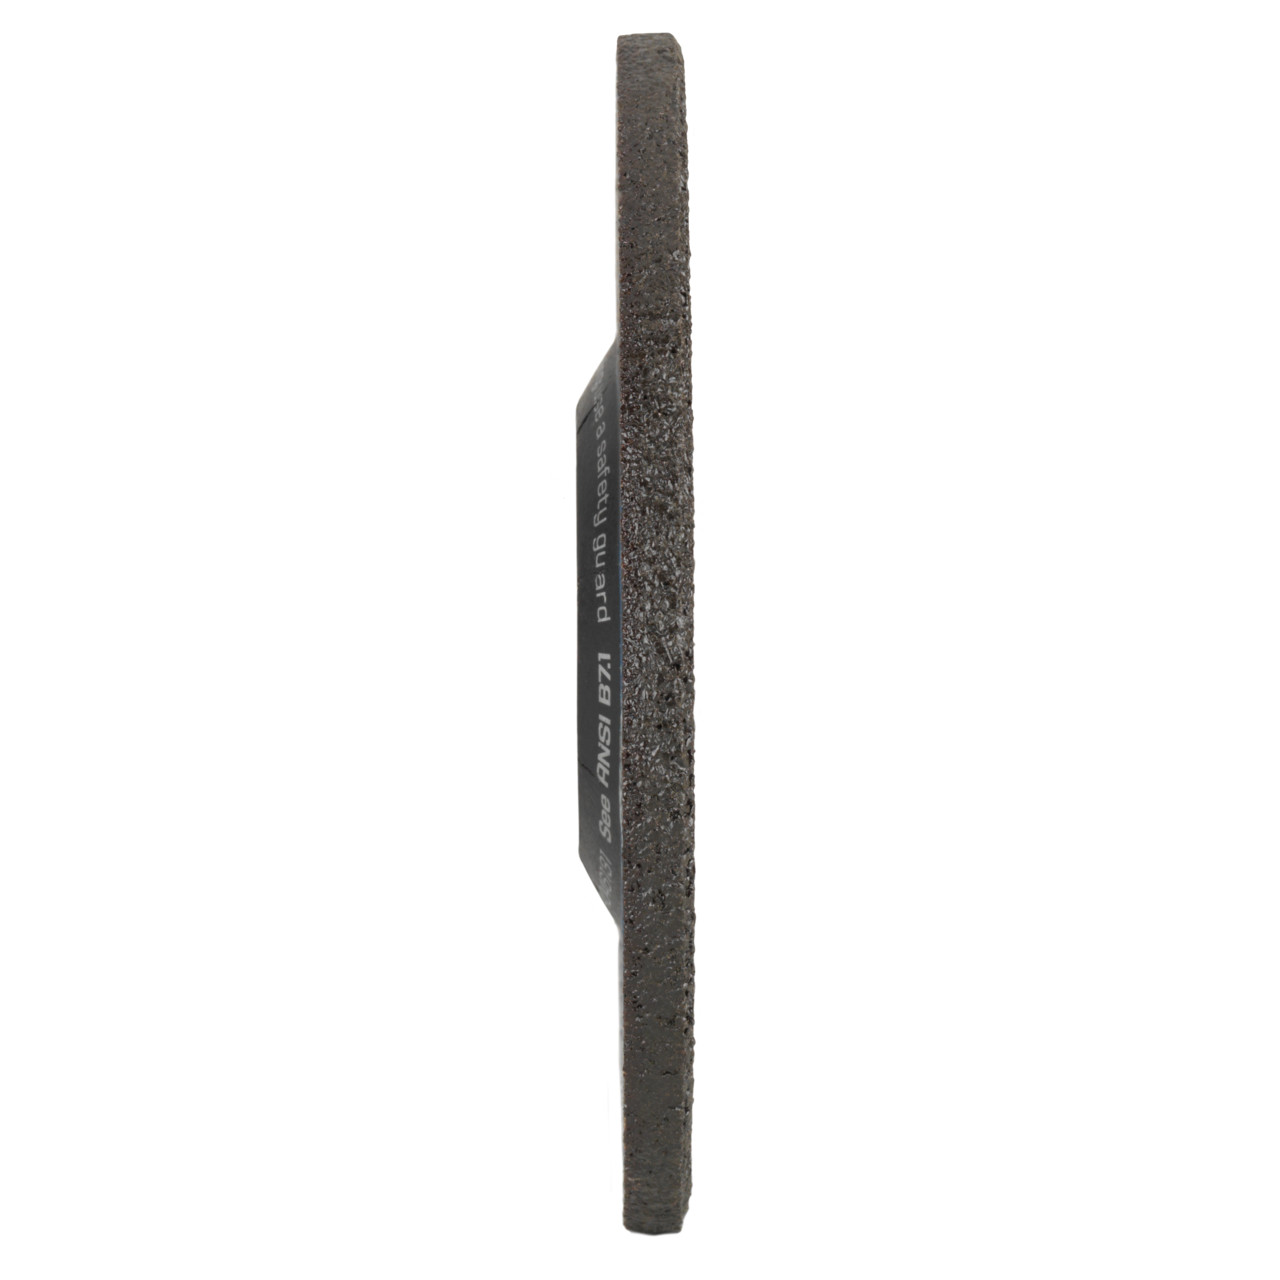 Tyrolit Voorslijpschijf DxUxH 125x4x22,23 2in1 voor staal en roestvast staal, vorm: 27 - offset uitvoering, Art. 5308